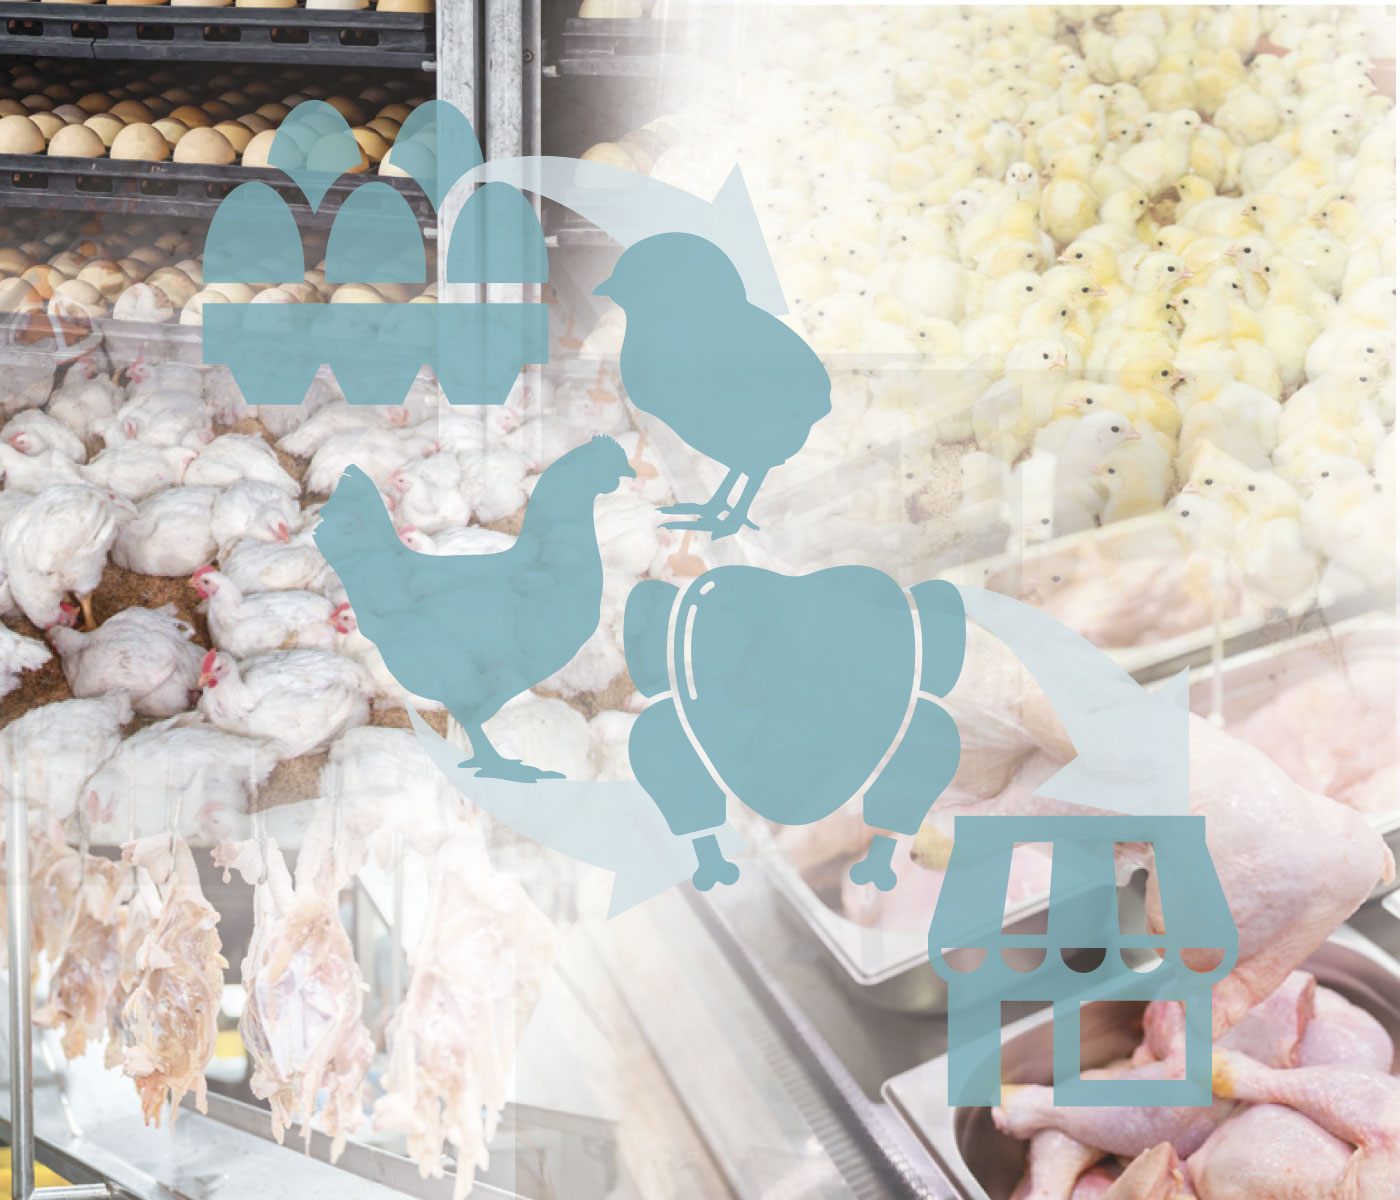 Evaluación cualitativa de riesgos en una cadena productiva de pollo